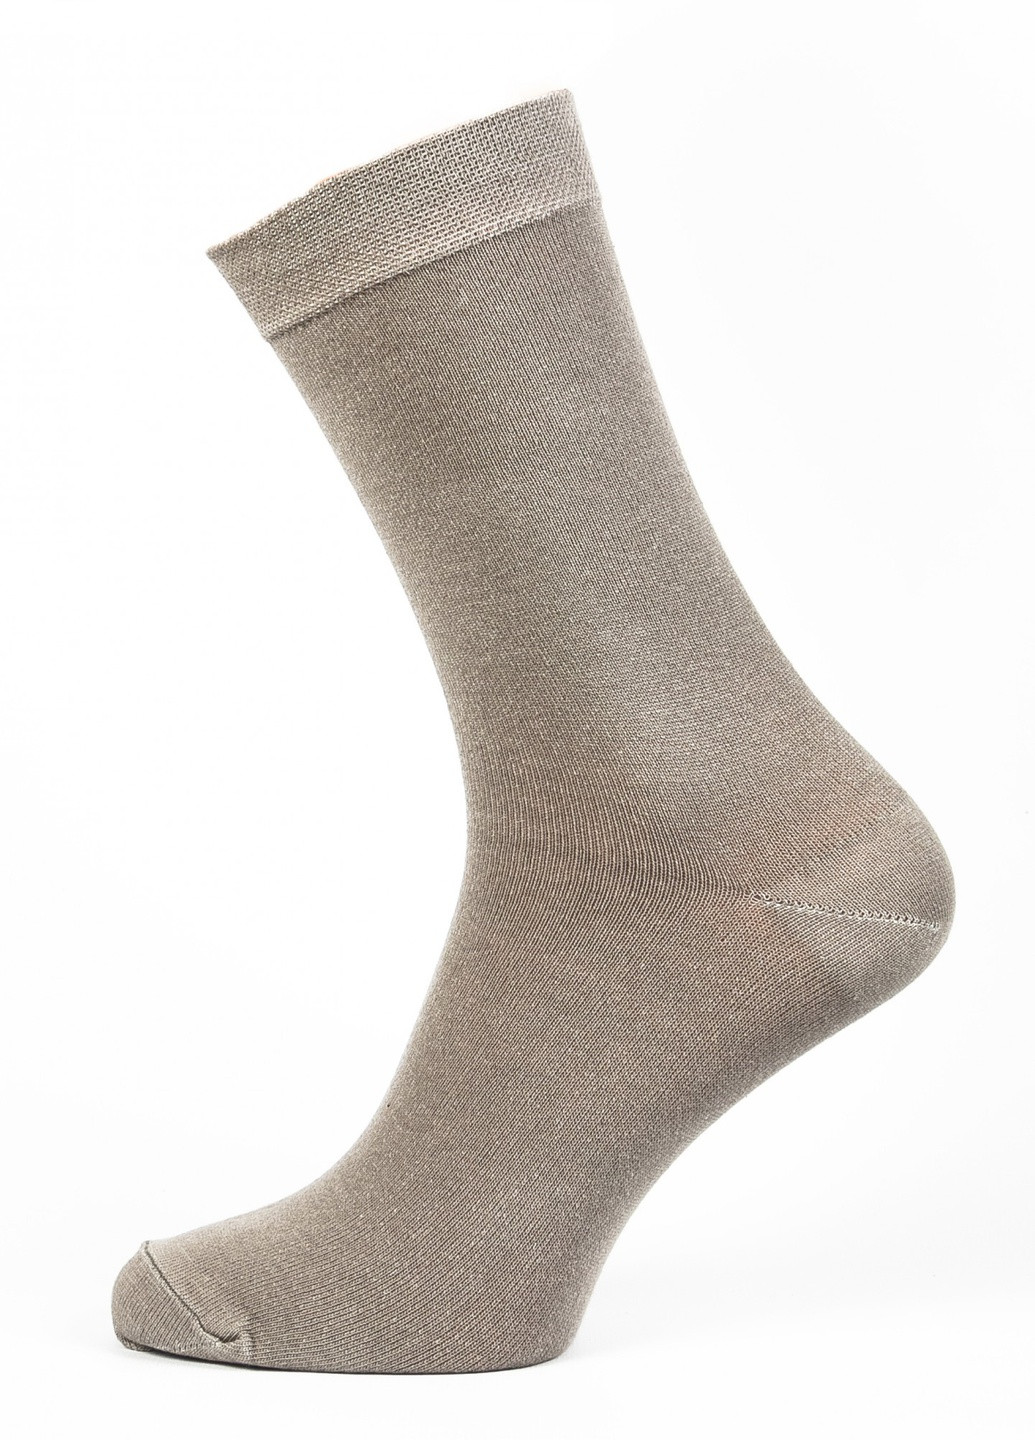 Шкарпетки чоловічі ТМ "Нова пара" 401 високі НОВА ПАРА висока модель (257062015)